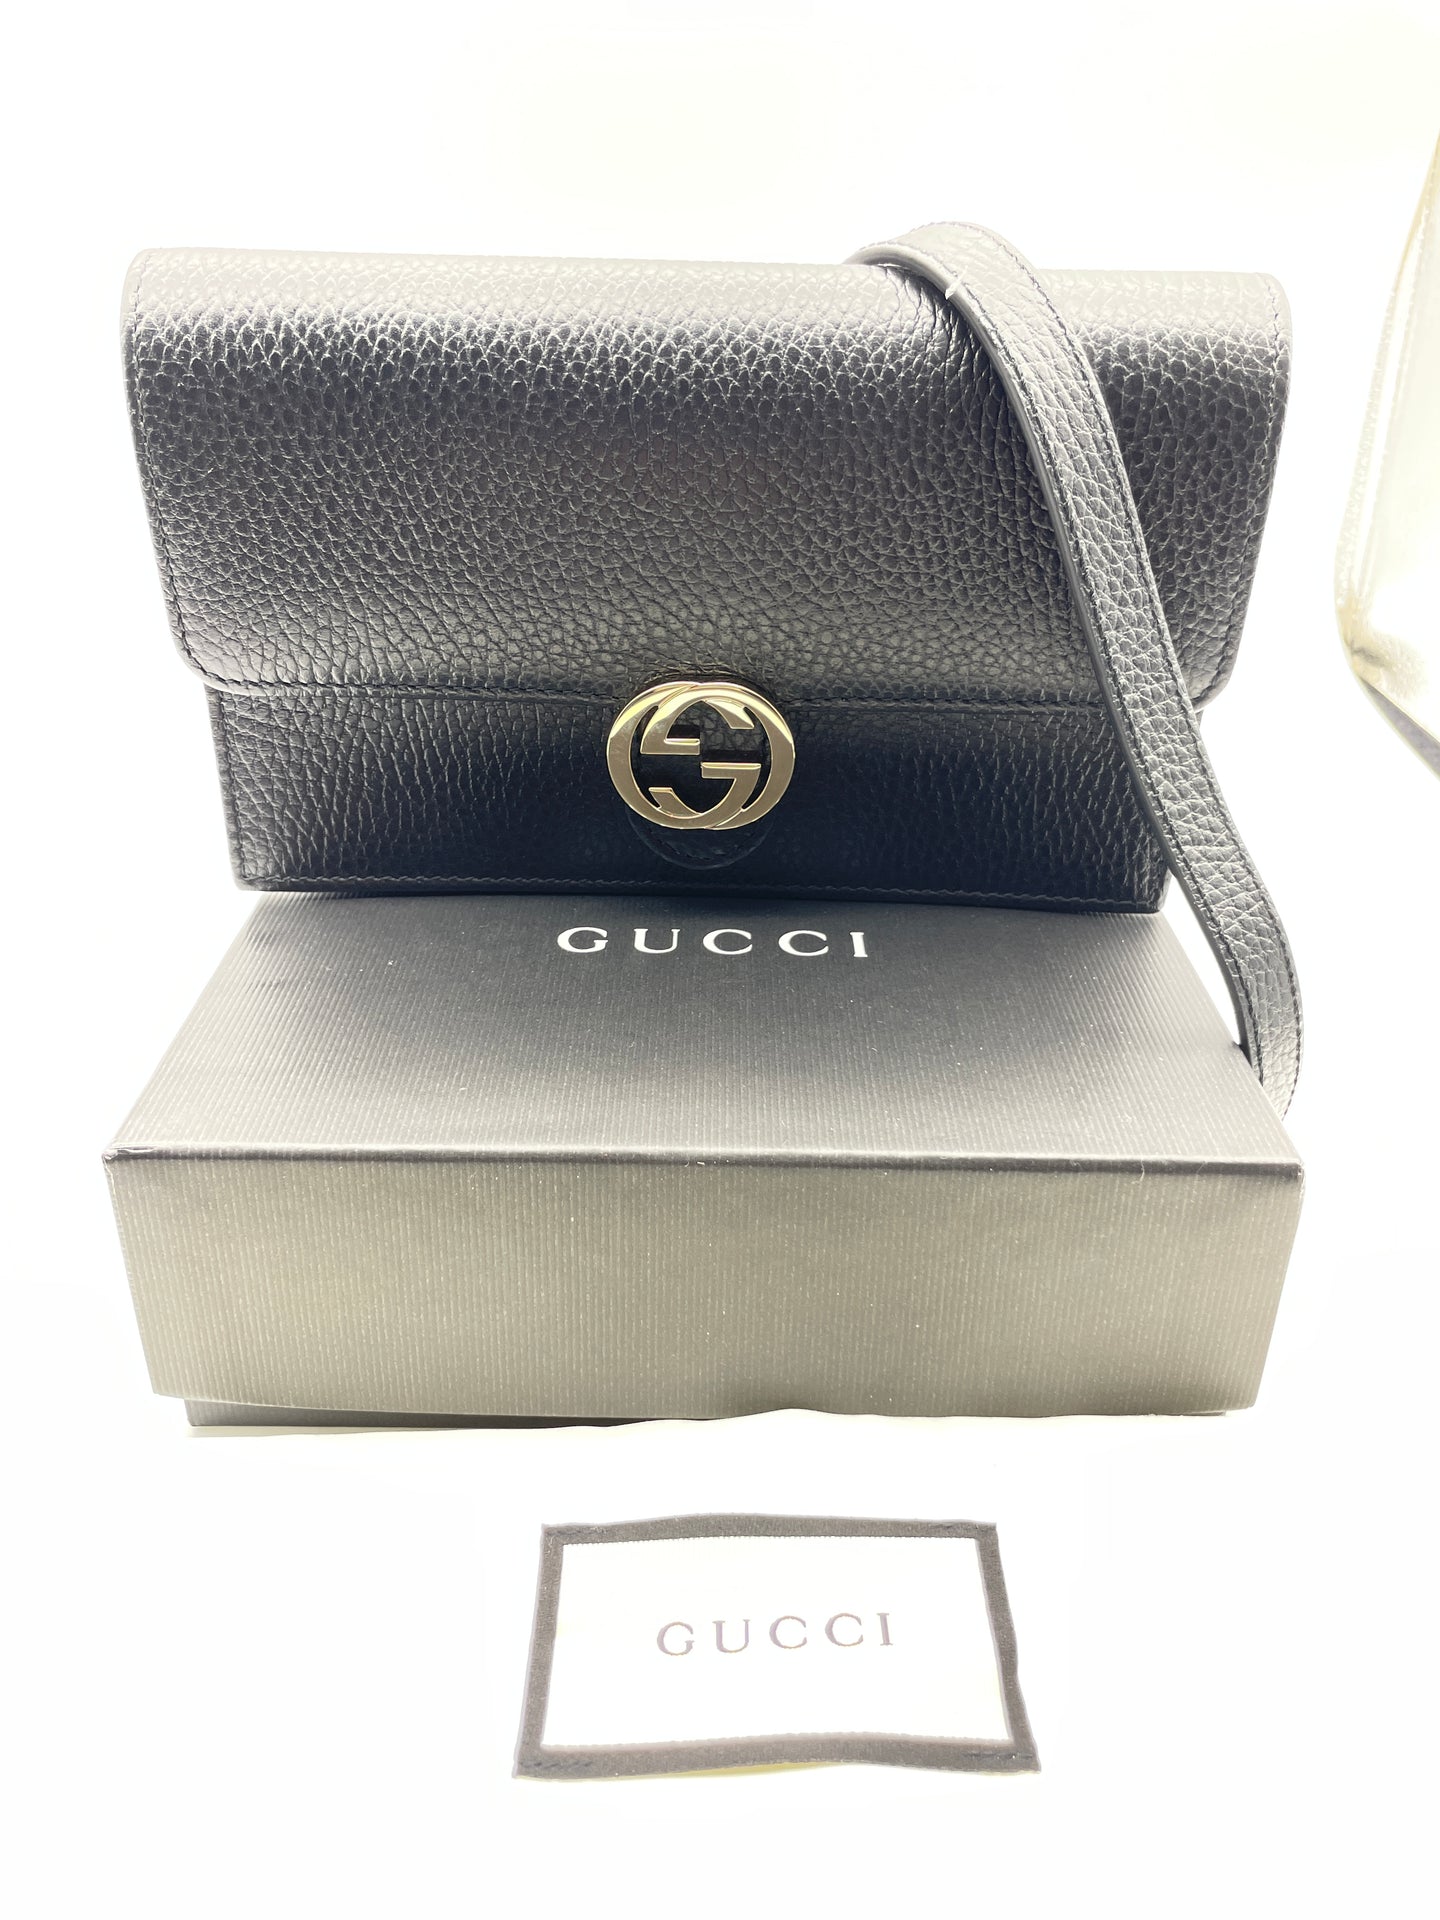 Gucci Black WOC Crossbody Clutch Bag